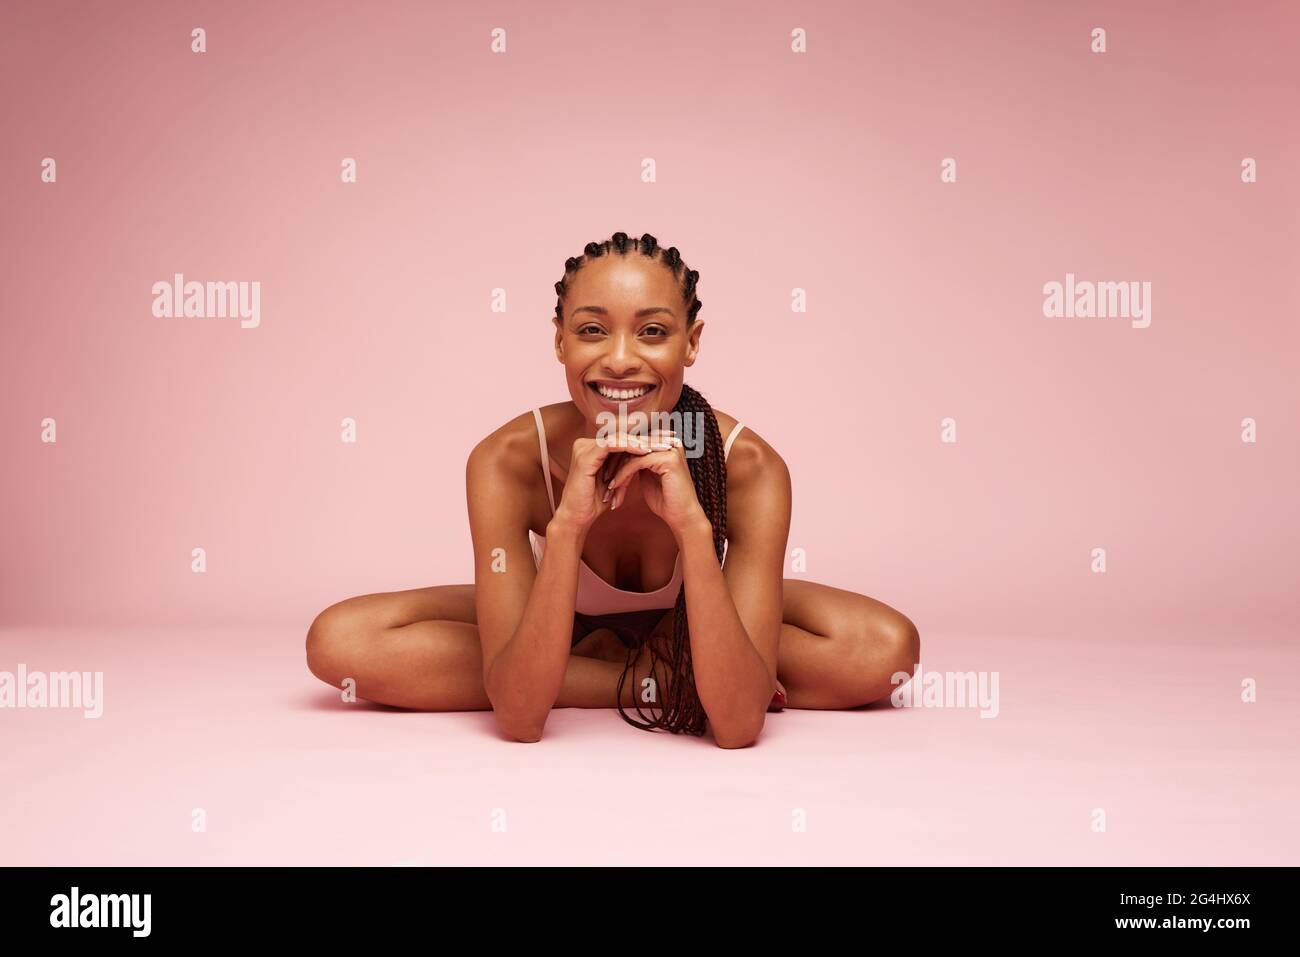 Mujer africana bonita sentada en el suelo con la mano en la barbilla. Modelo femenino mirando la cámara y sonriendo mientras está sentado sobre fondo rosa. Foto de stock